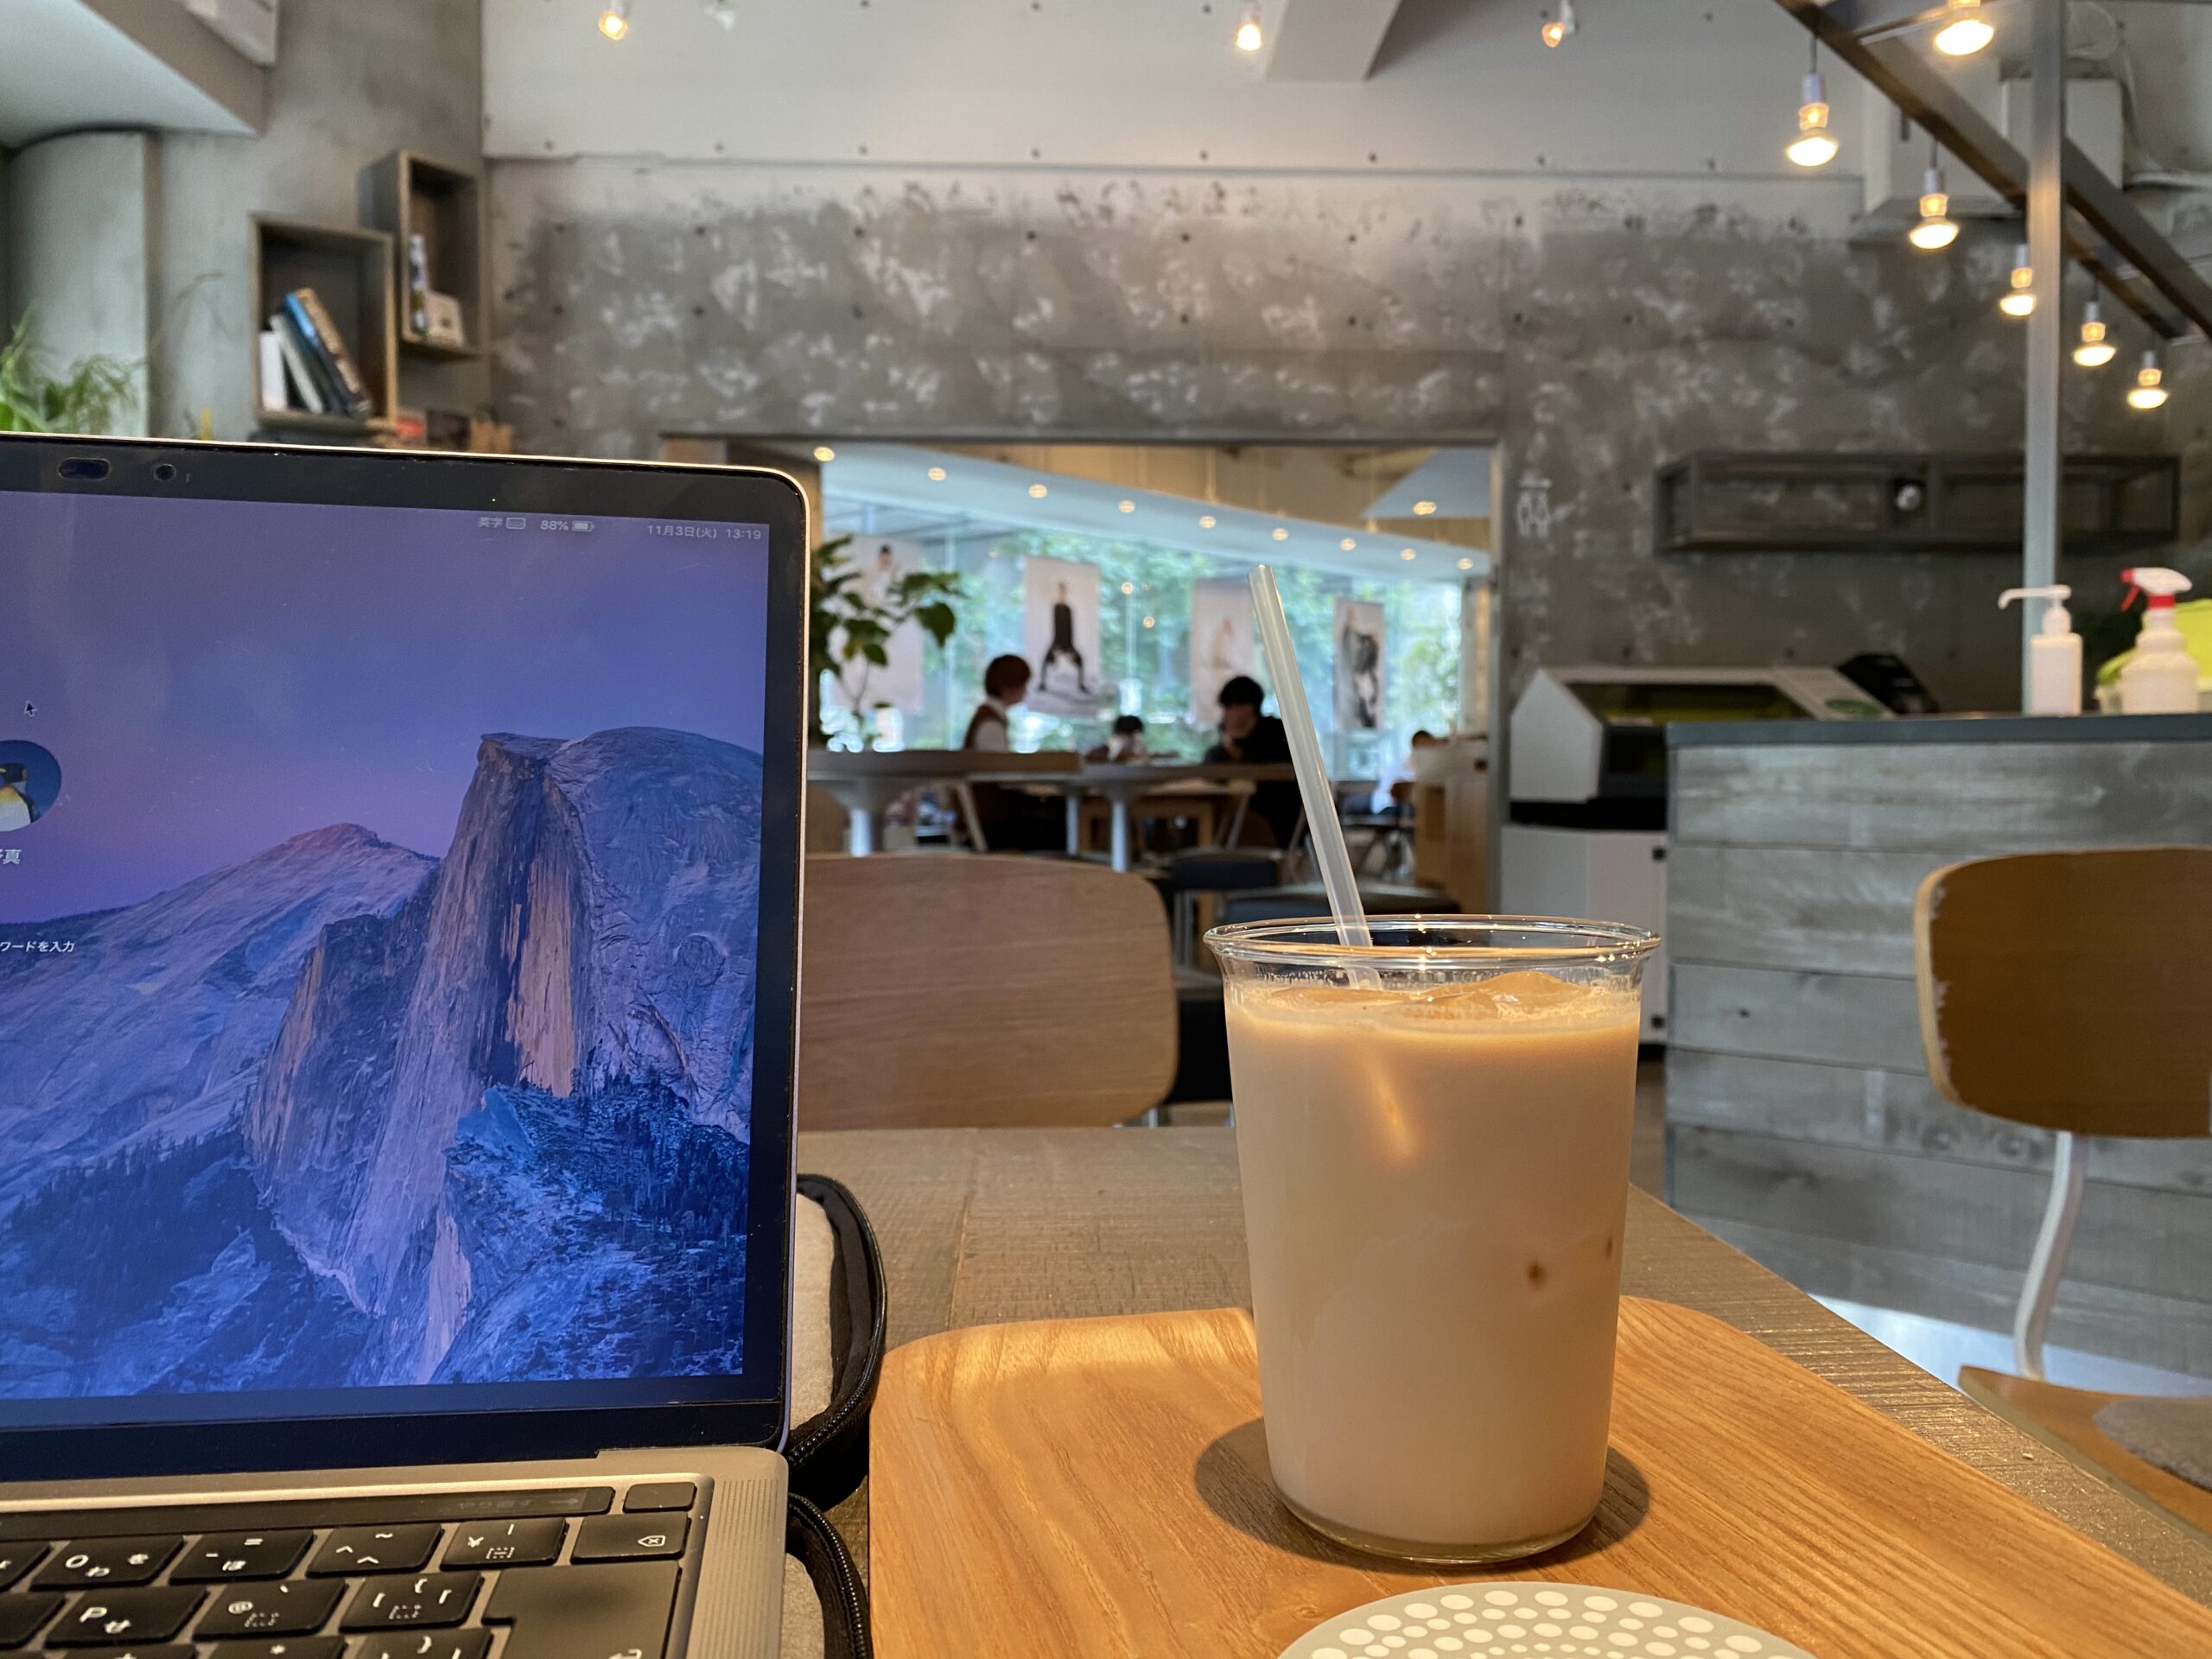 ブルートラベルエンジニア パソコン作業（プログラミング学習環境）におすすめのカフェ|渋谷 FabCafe